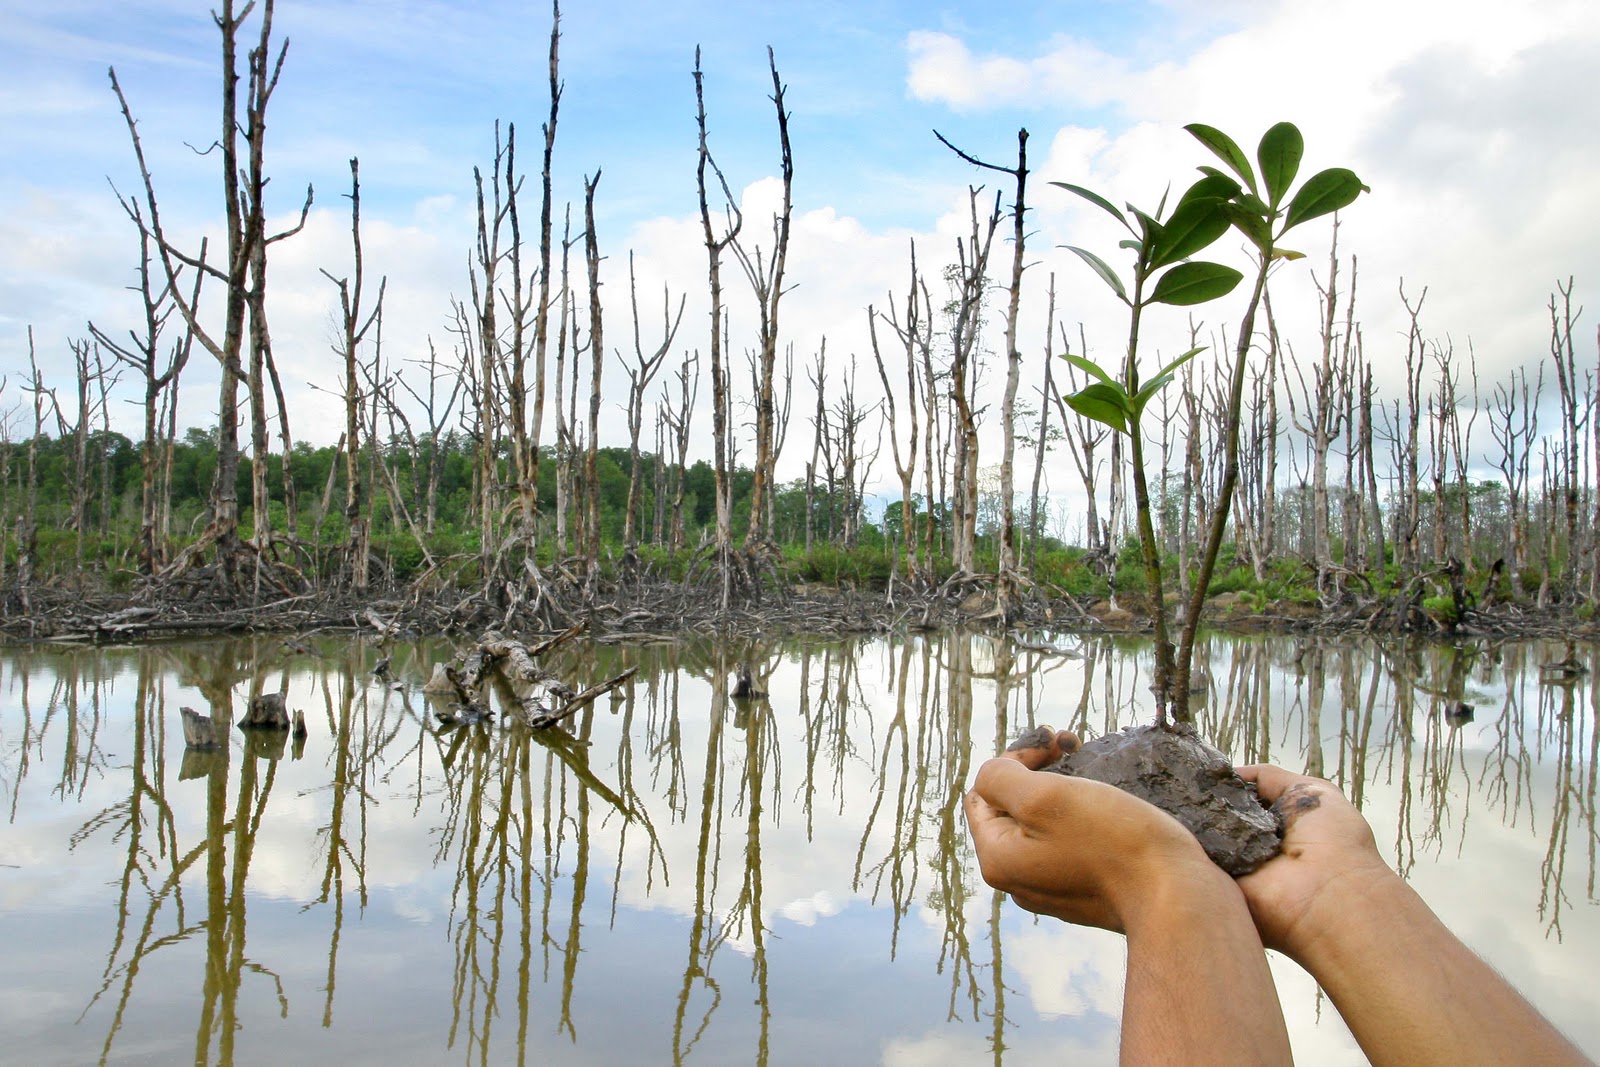 7500 Mangrove Dan Cemara Laut Ditanam Di Pantai Pulau Panjang